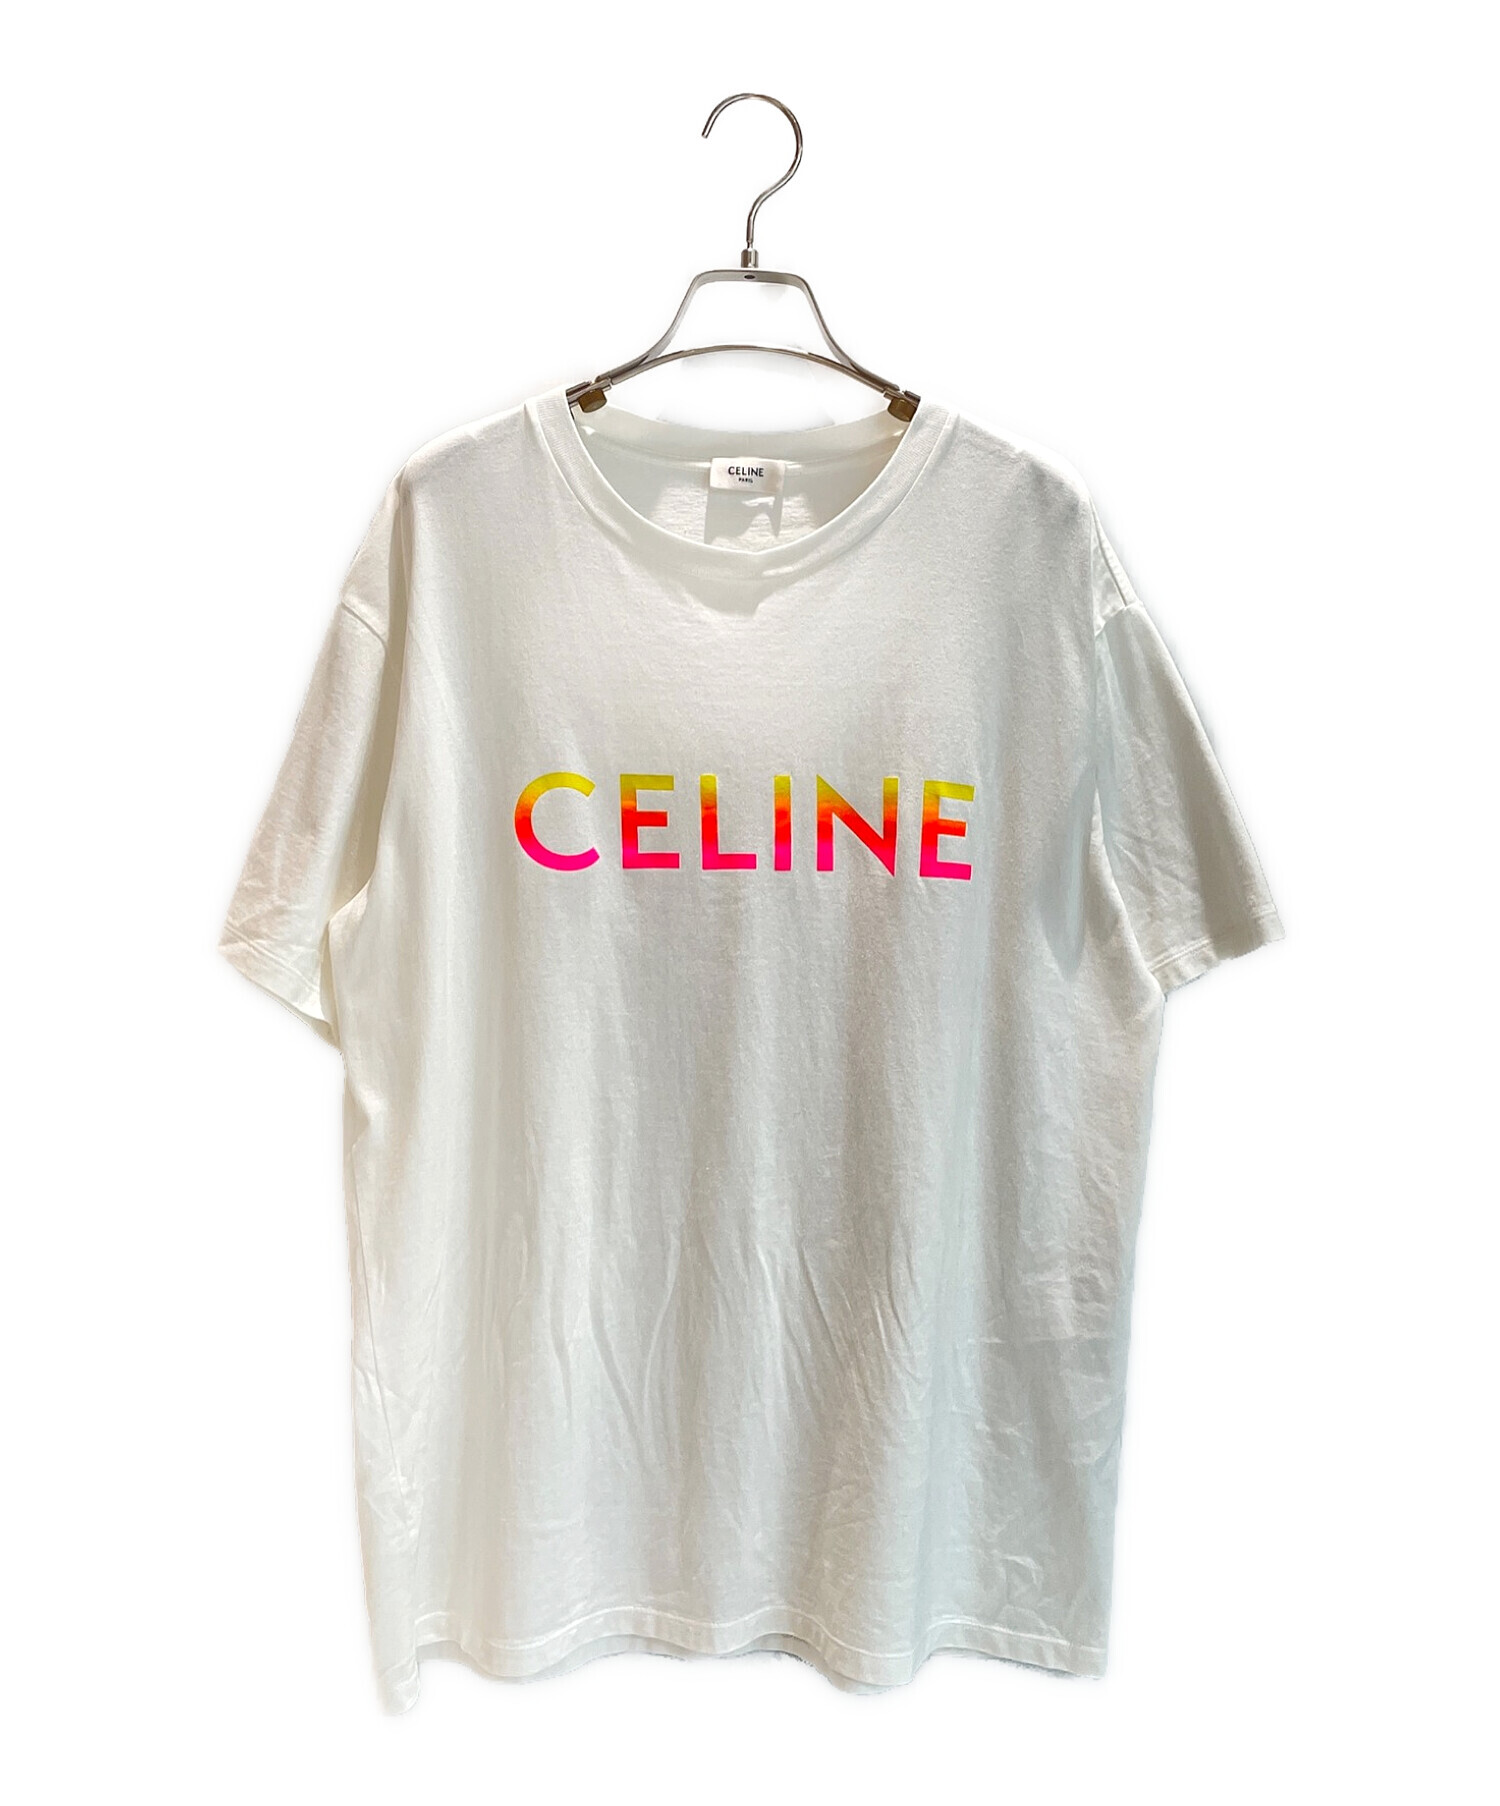 CELINE (セリーヌ) グラデーションロゴプリントルーズTシャツ ホワイト サイズ:S